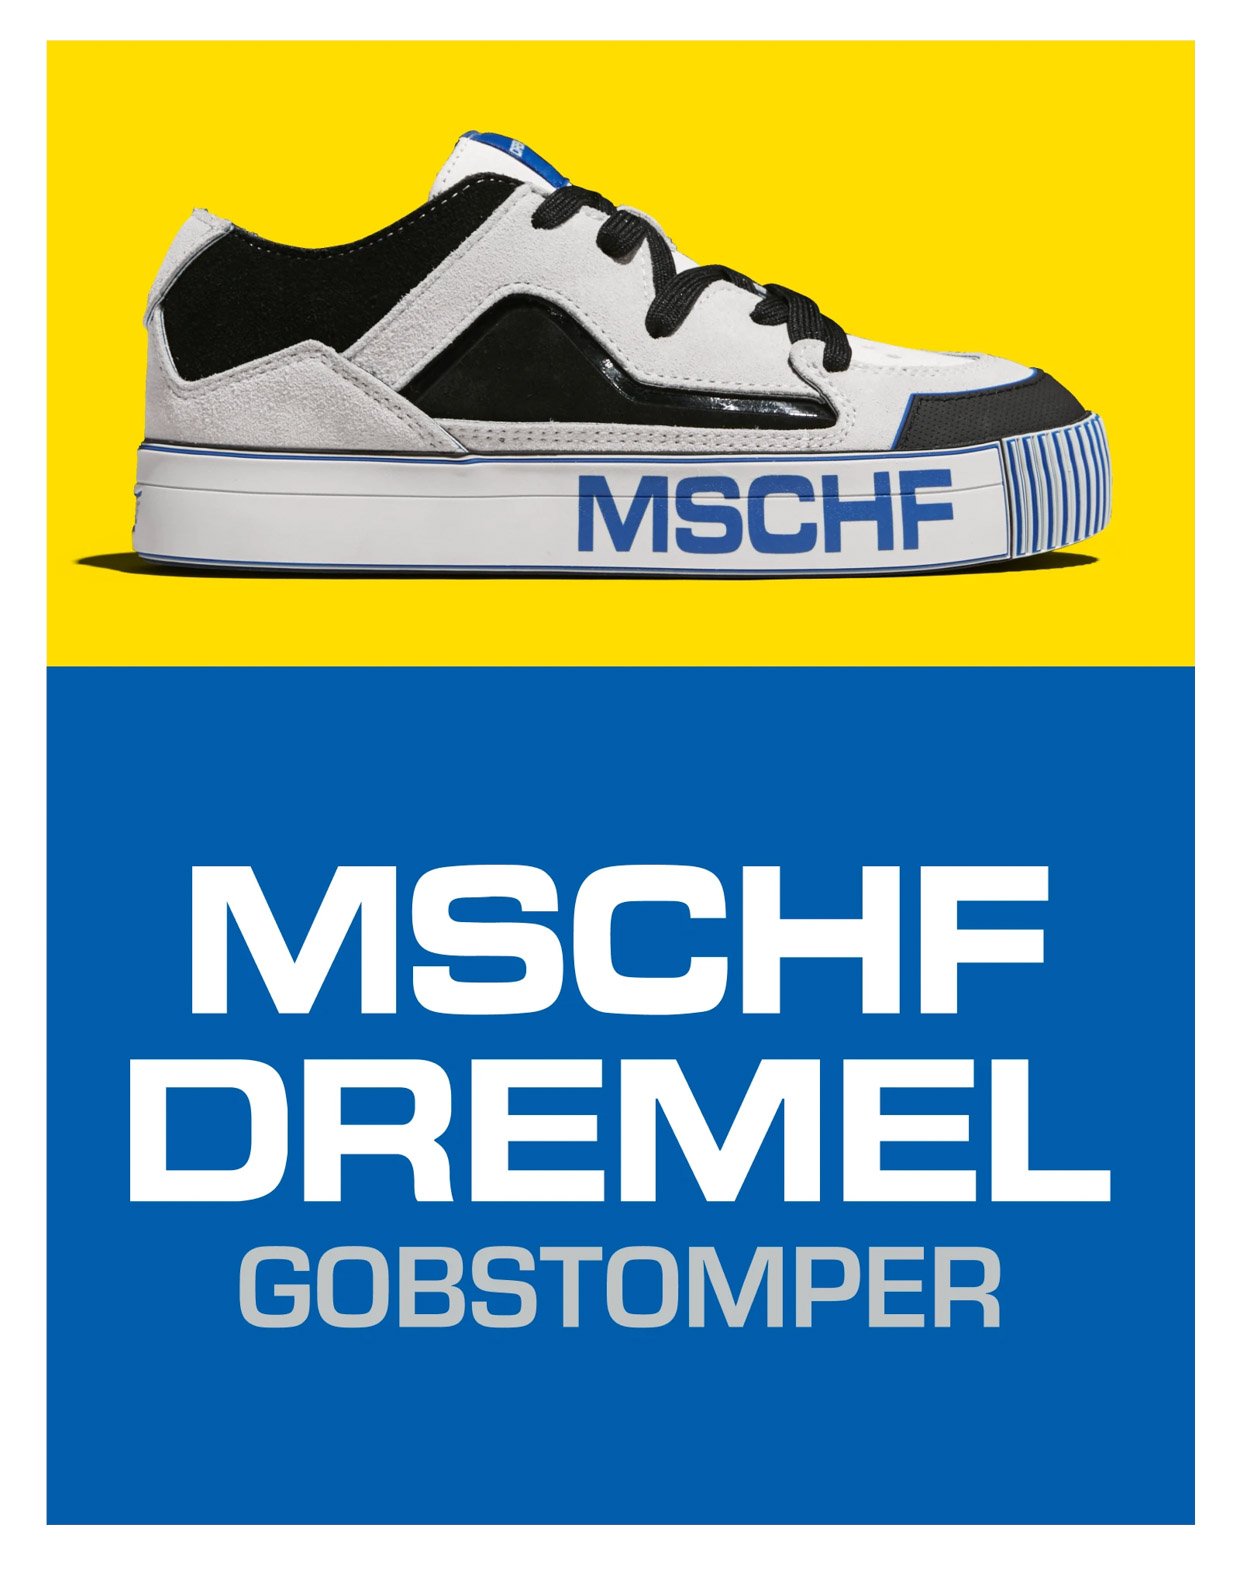 MSCHF x Dremel Gobstomper Shoe Kit